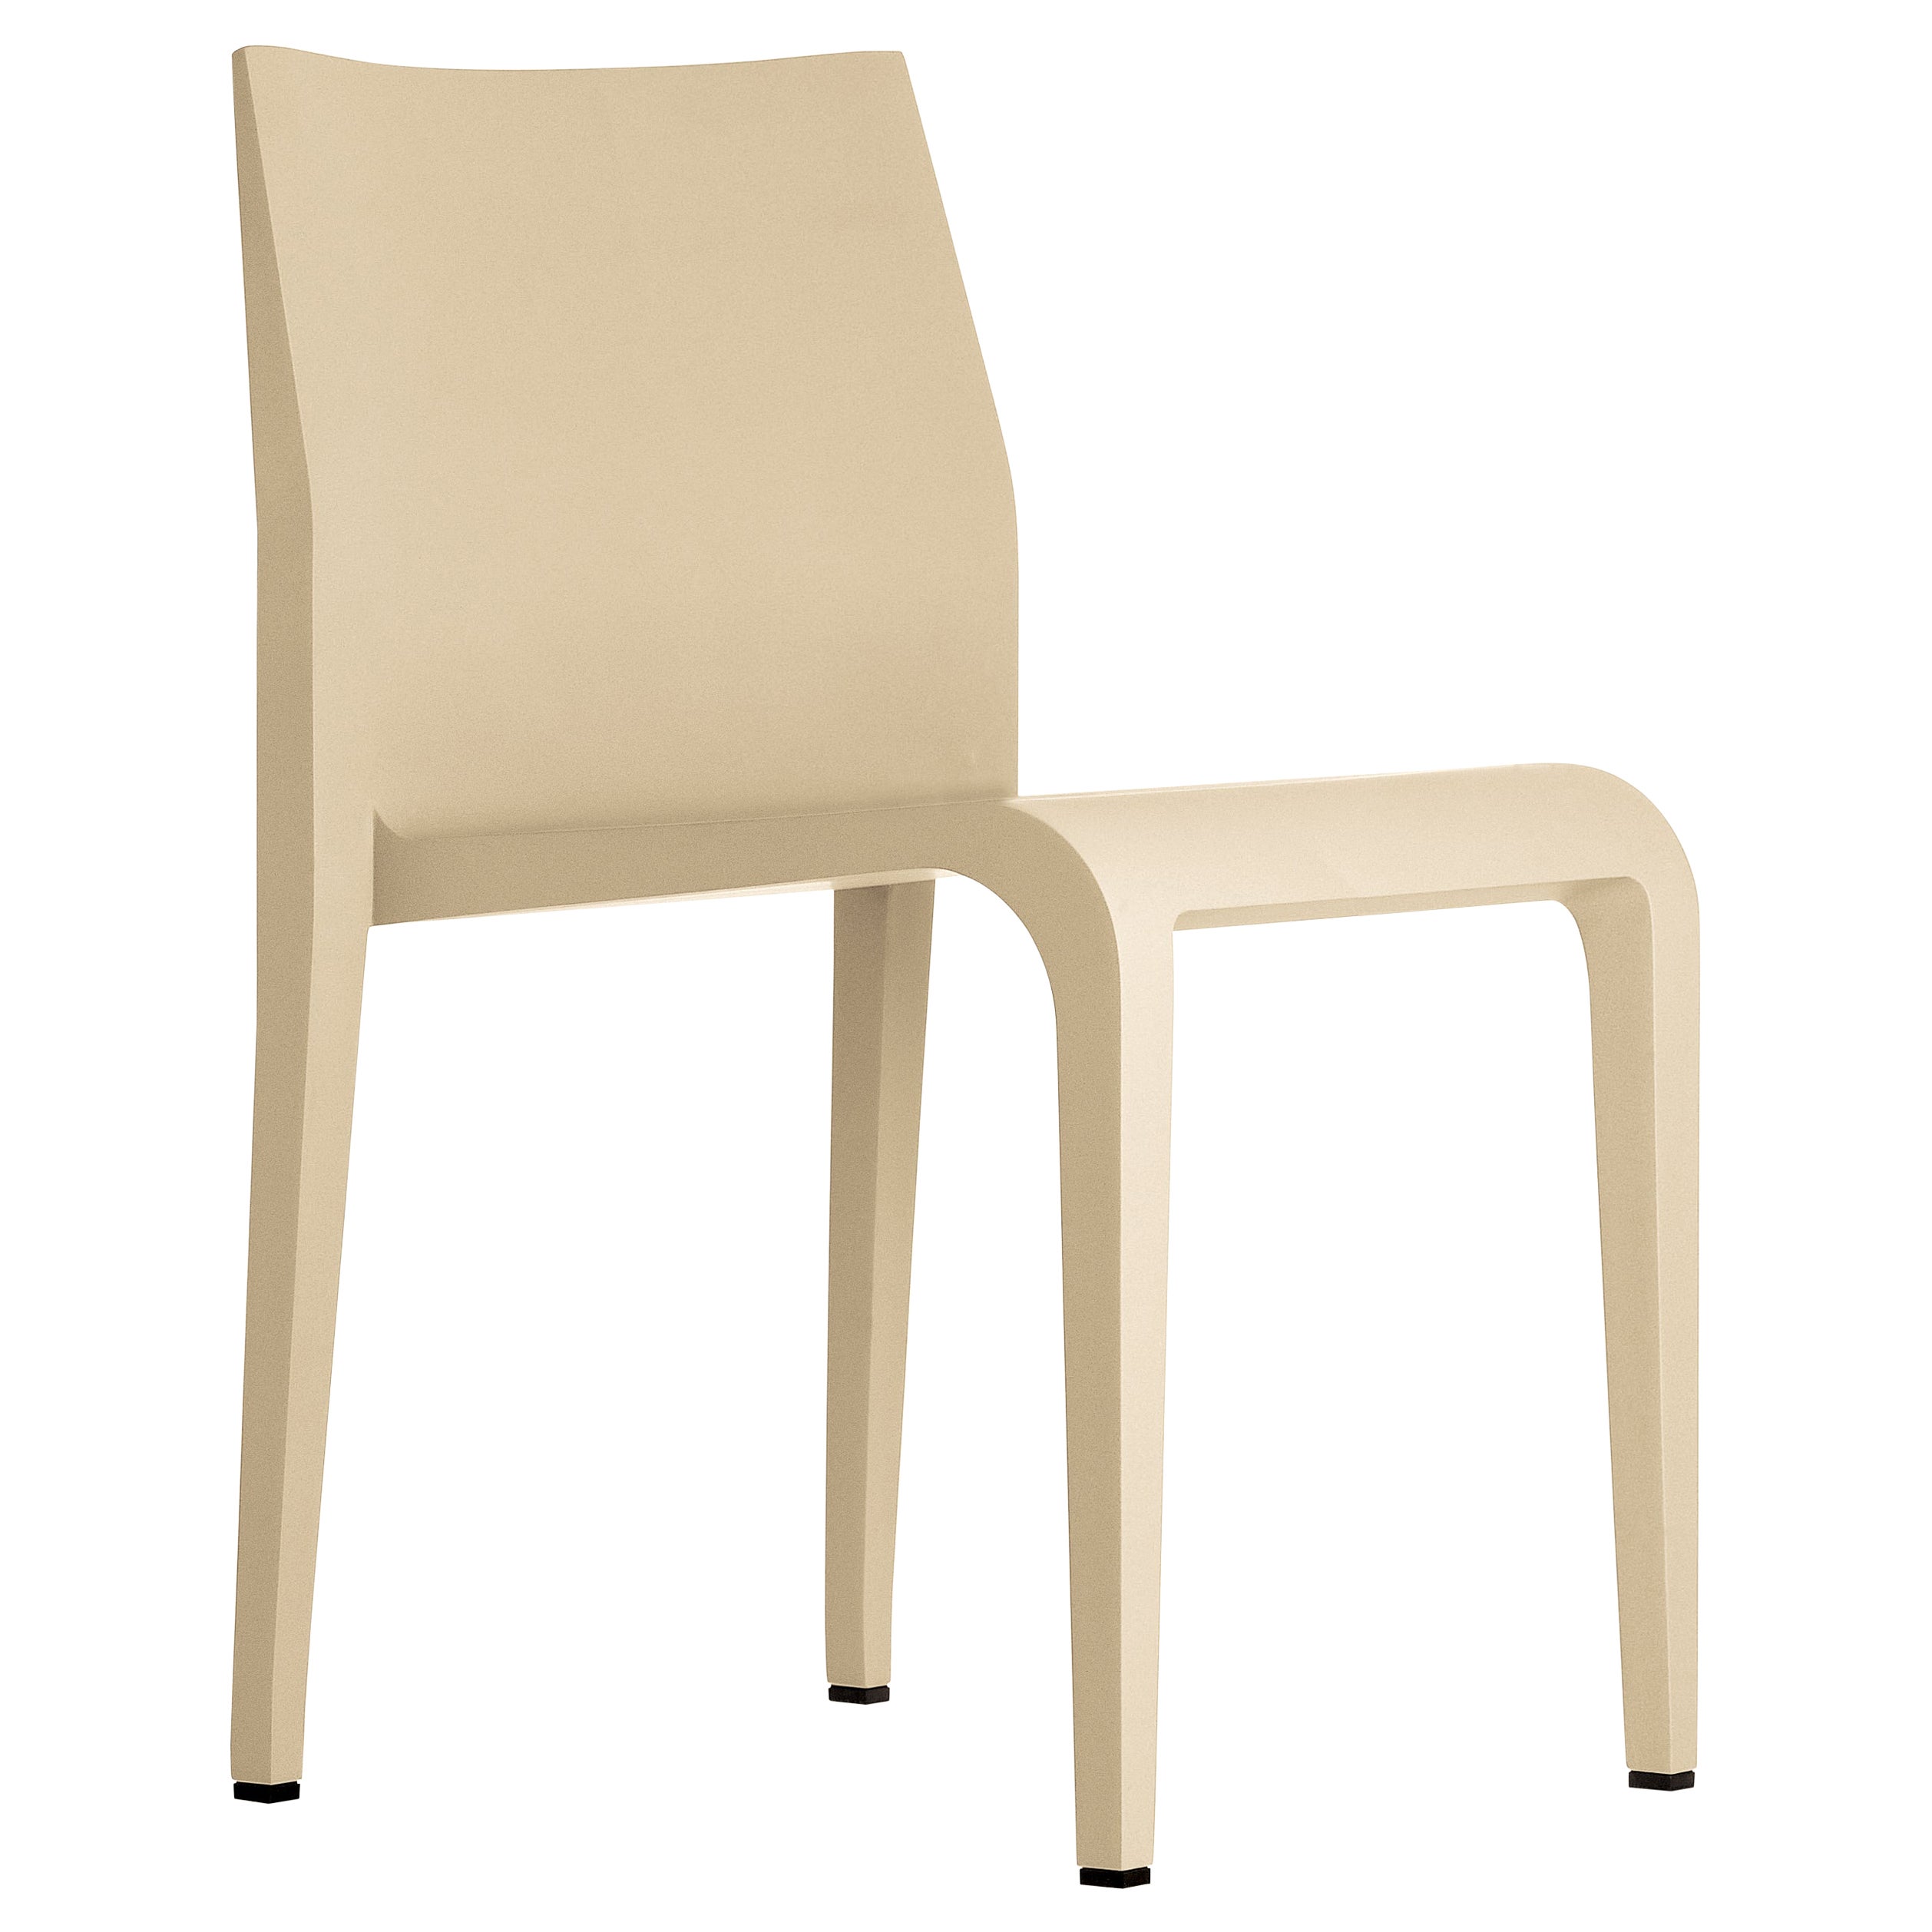 Alias 316 Laleggera Chair+ in Natural Maple Wood Frame by Riccardo Blumer